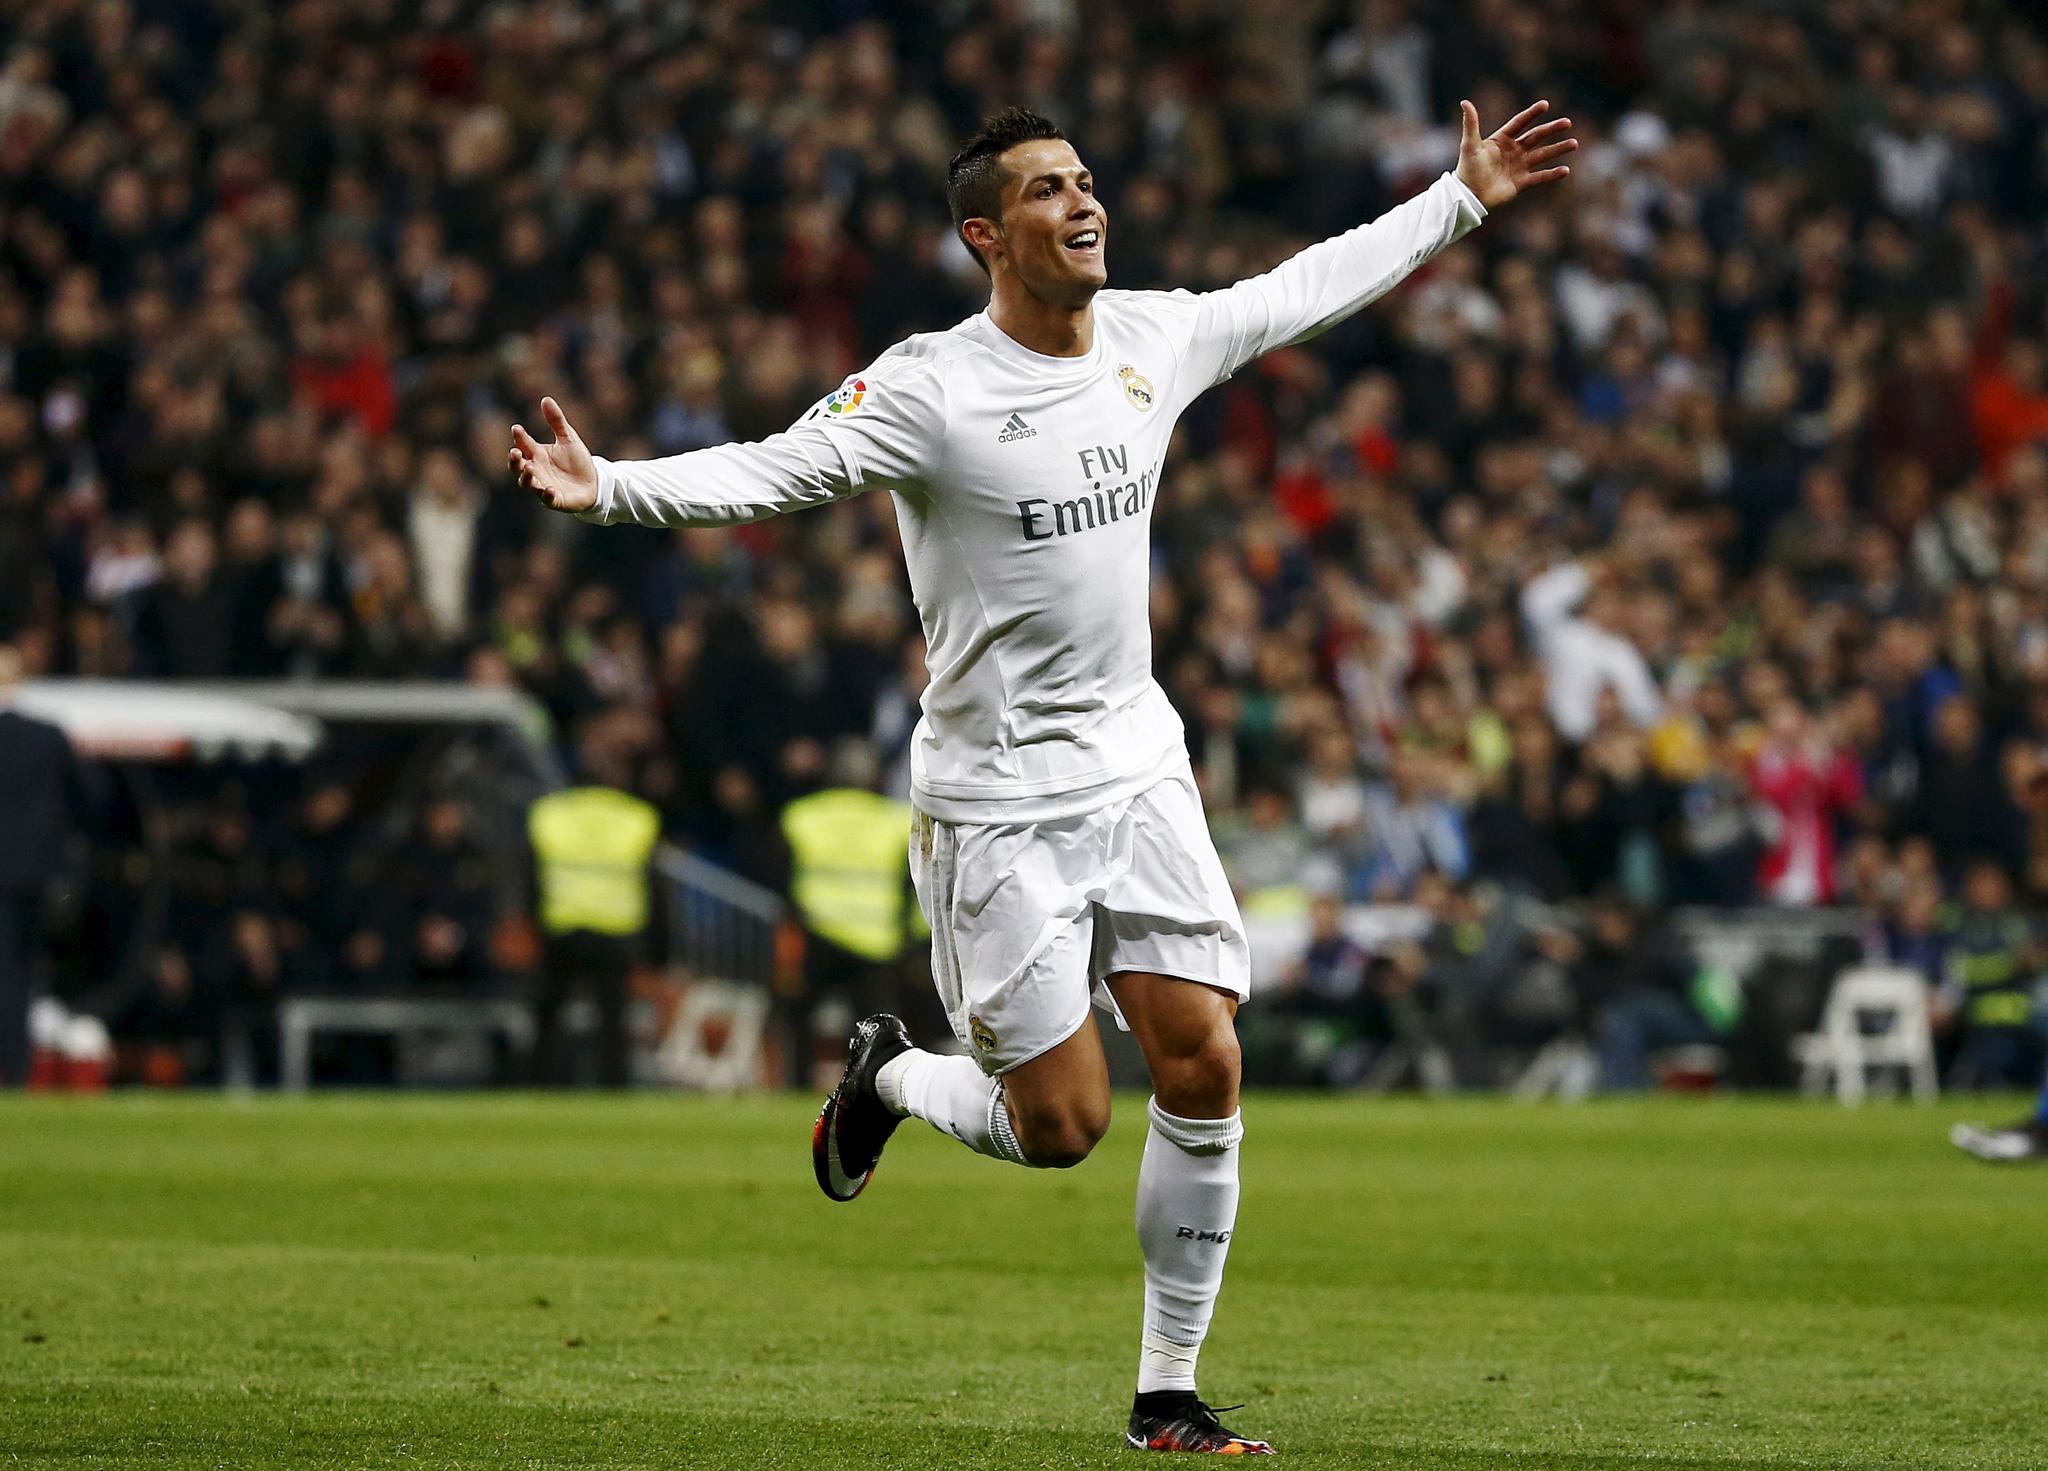 Cristiano Ronaldo var i storform mot Espanyol søndag.